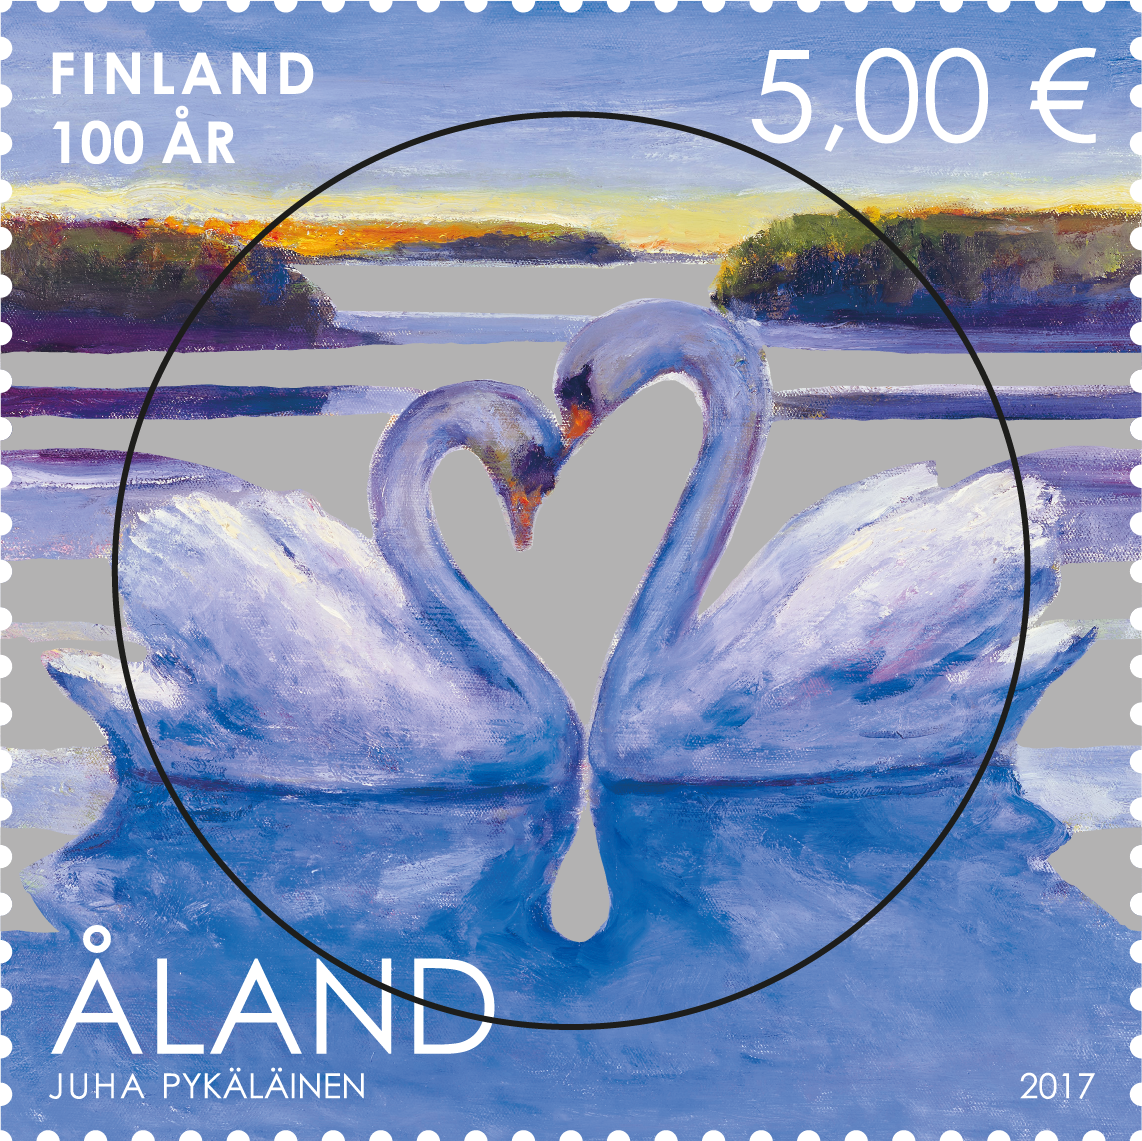 Finland 100 år -stämplat